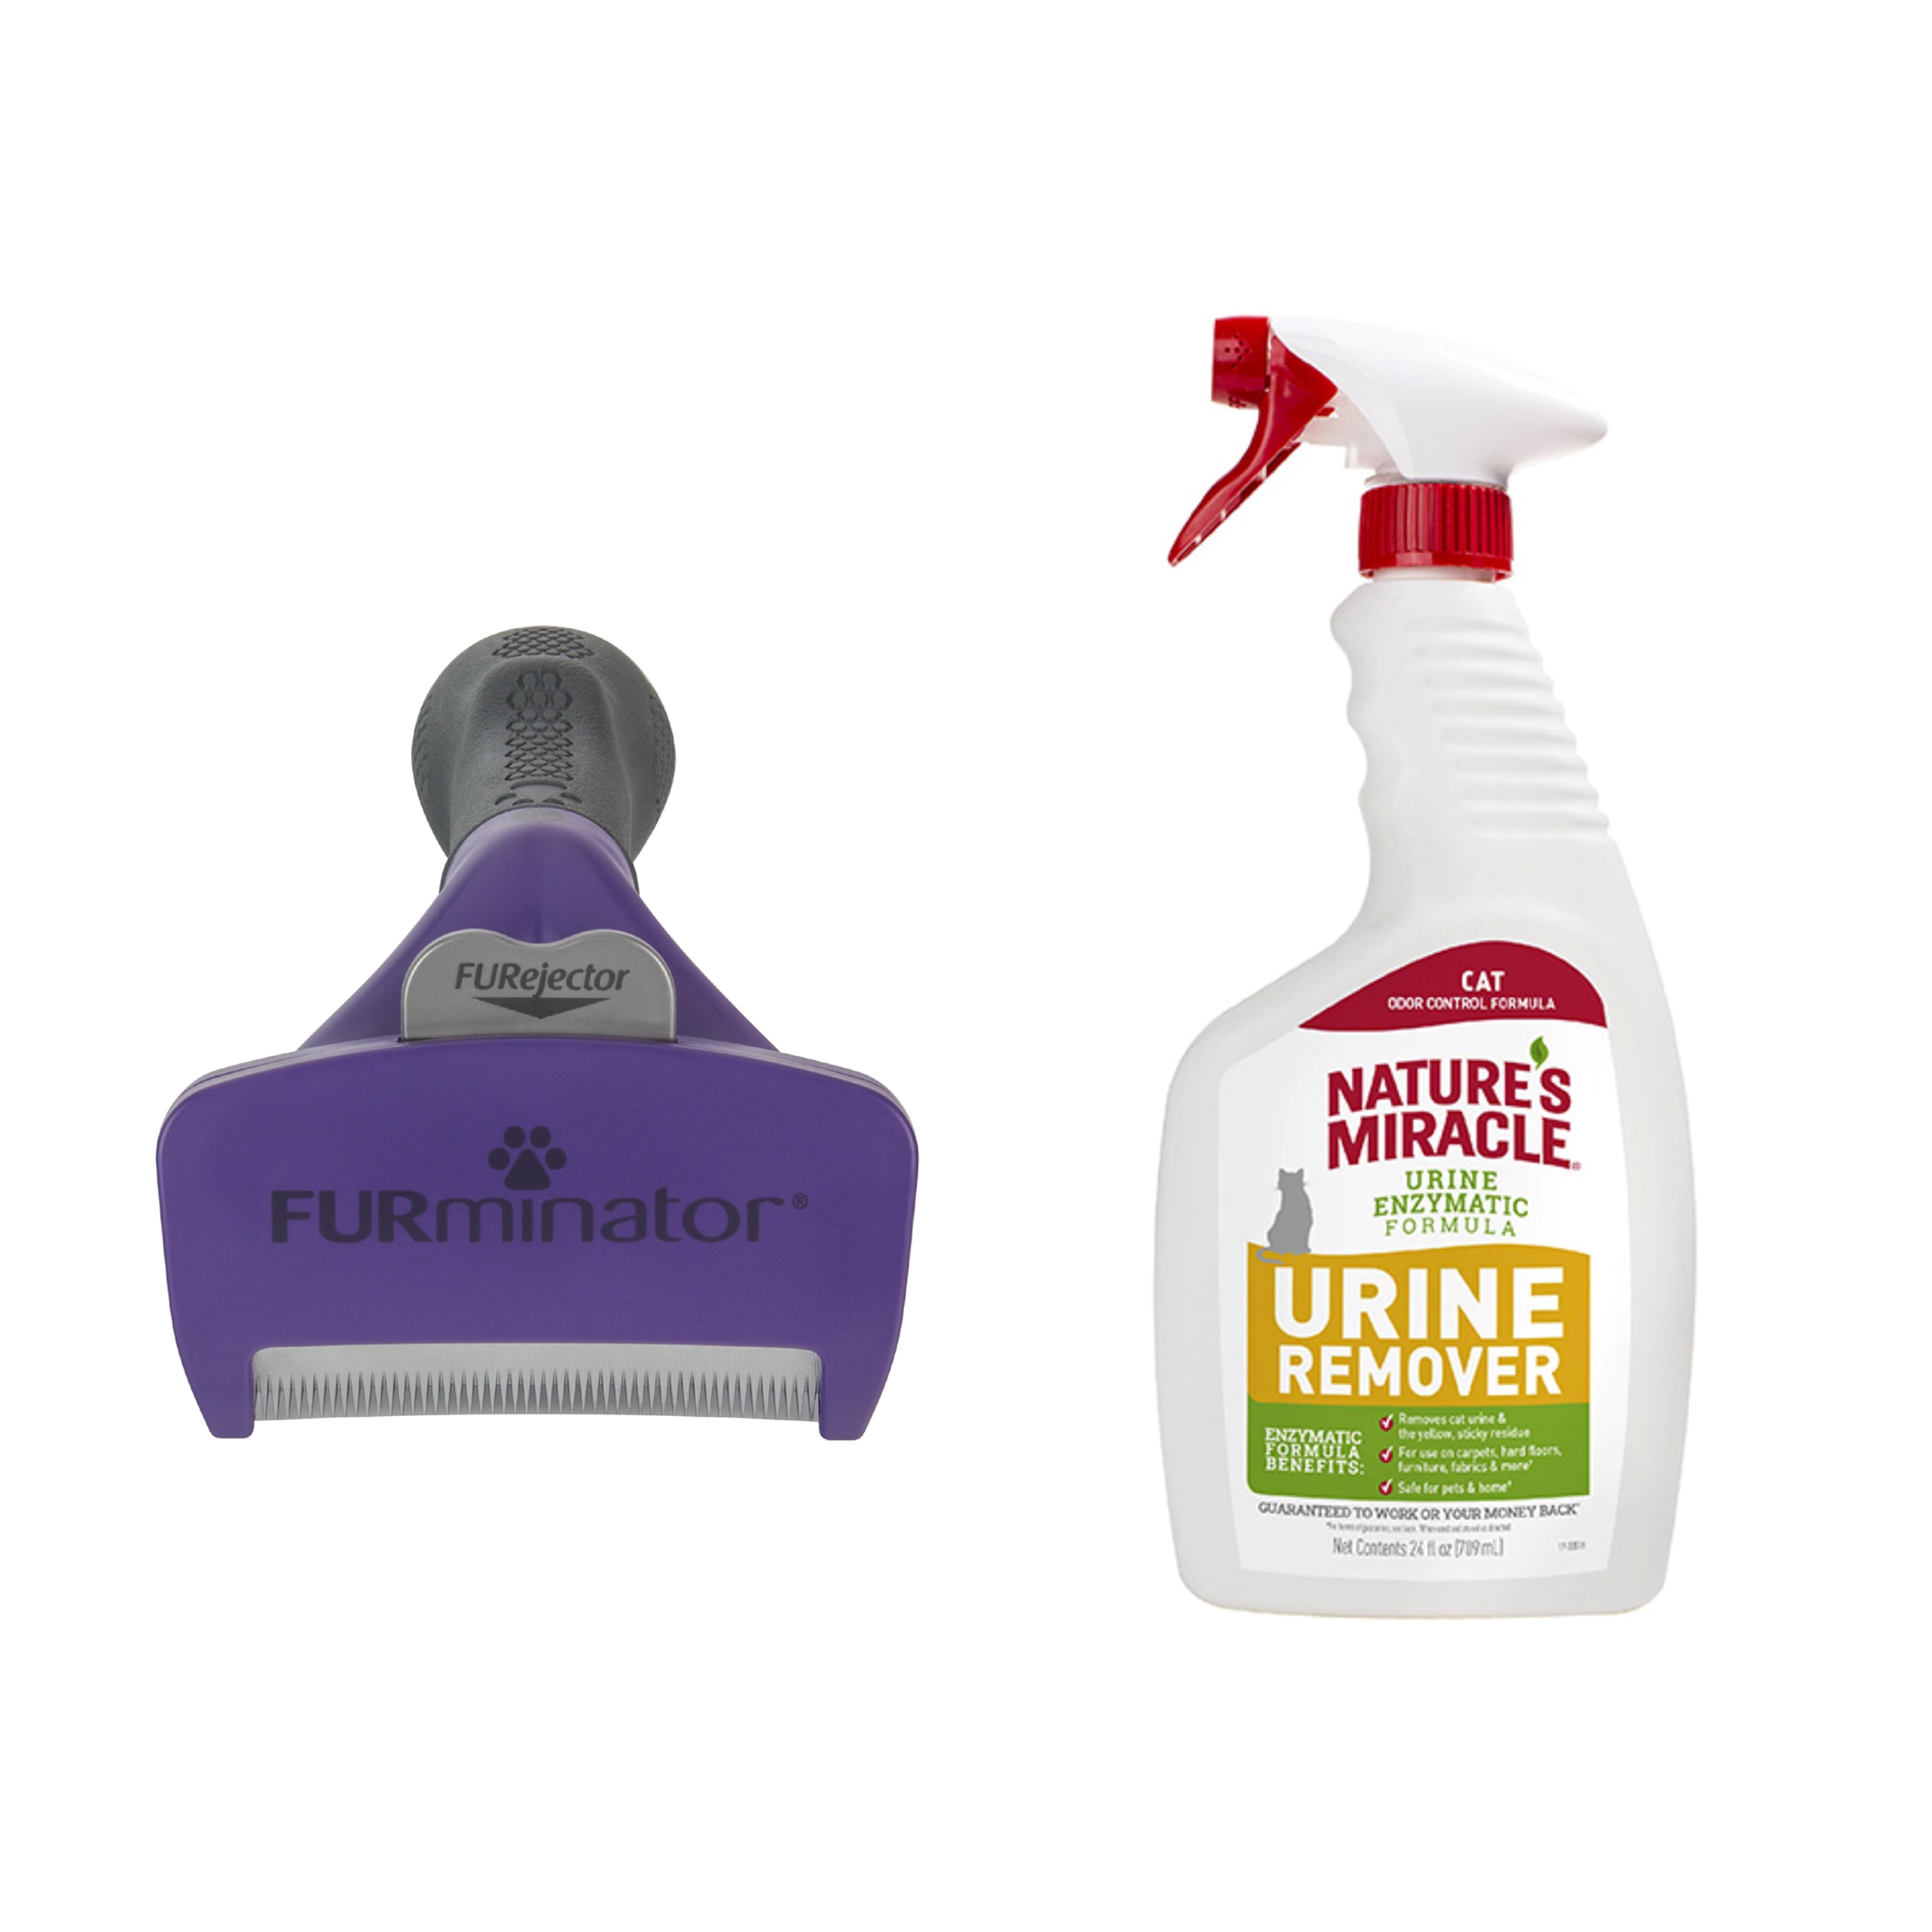 Furminator Cat DeShedding Tool with Cat Urine Remover Spray